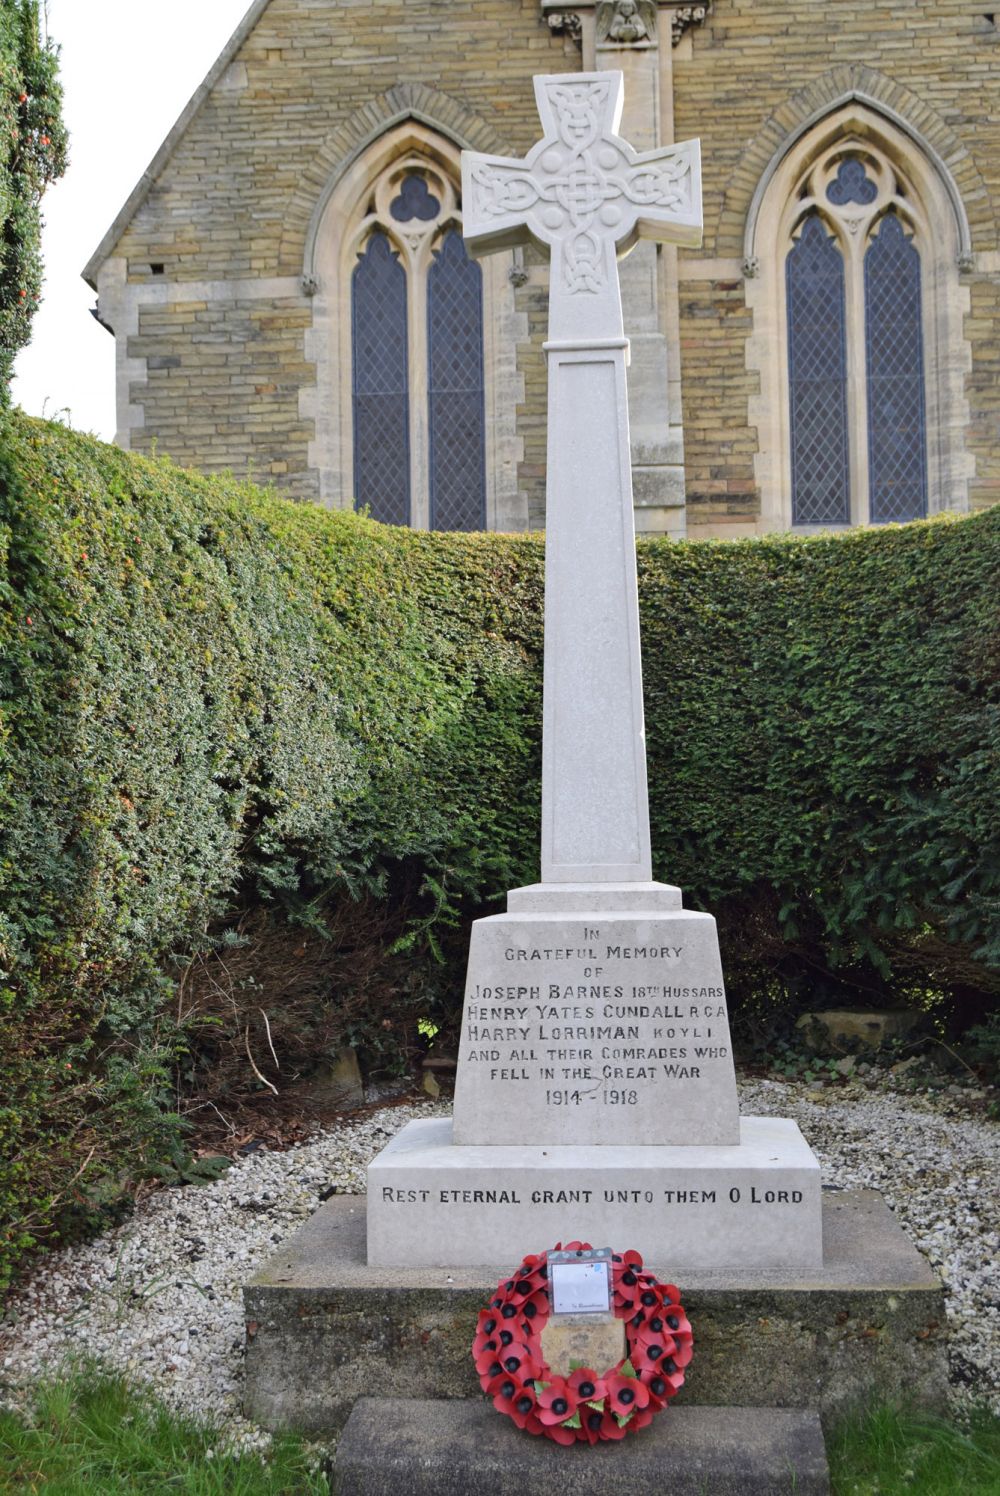 Appleton Roebuck war memorial